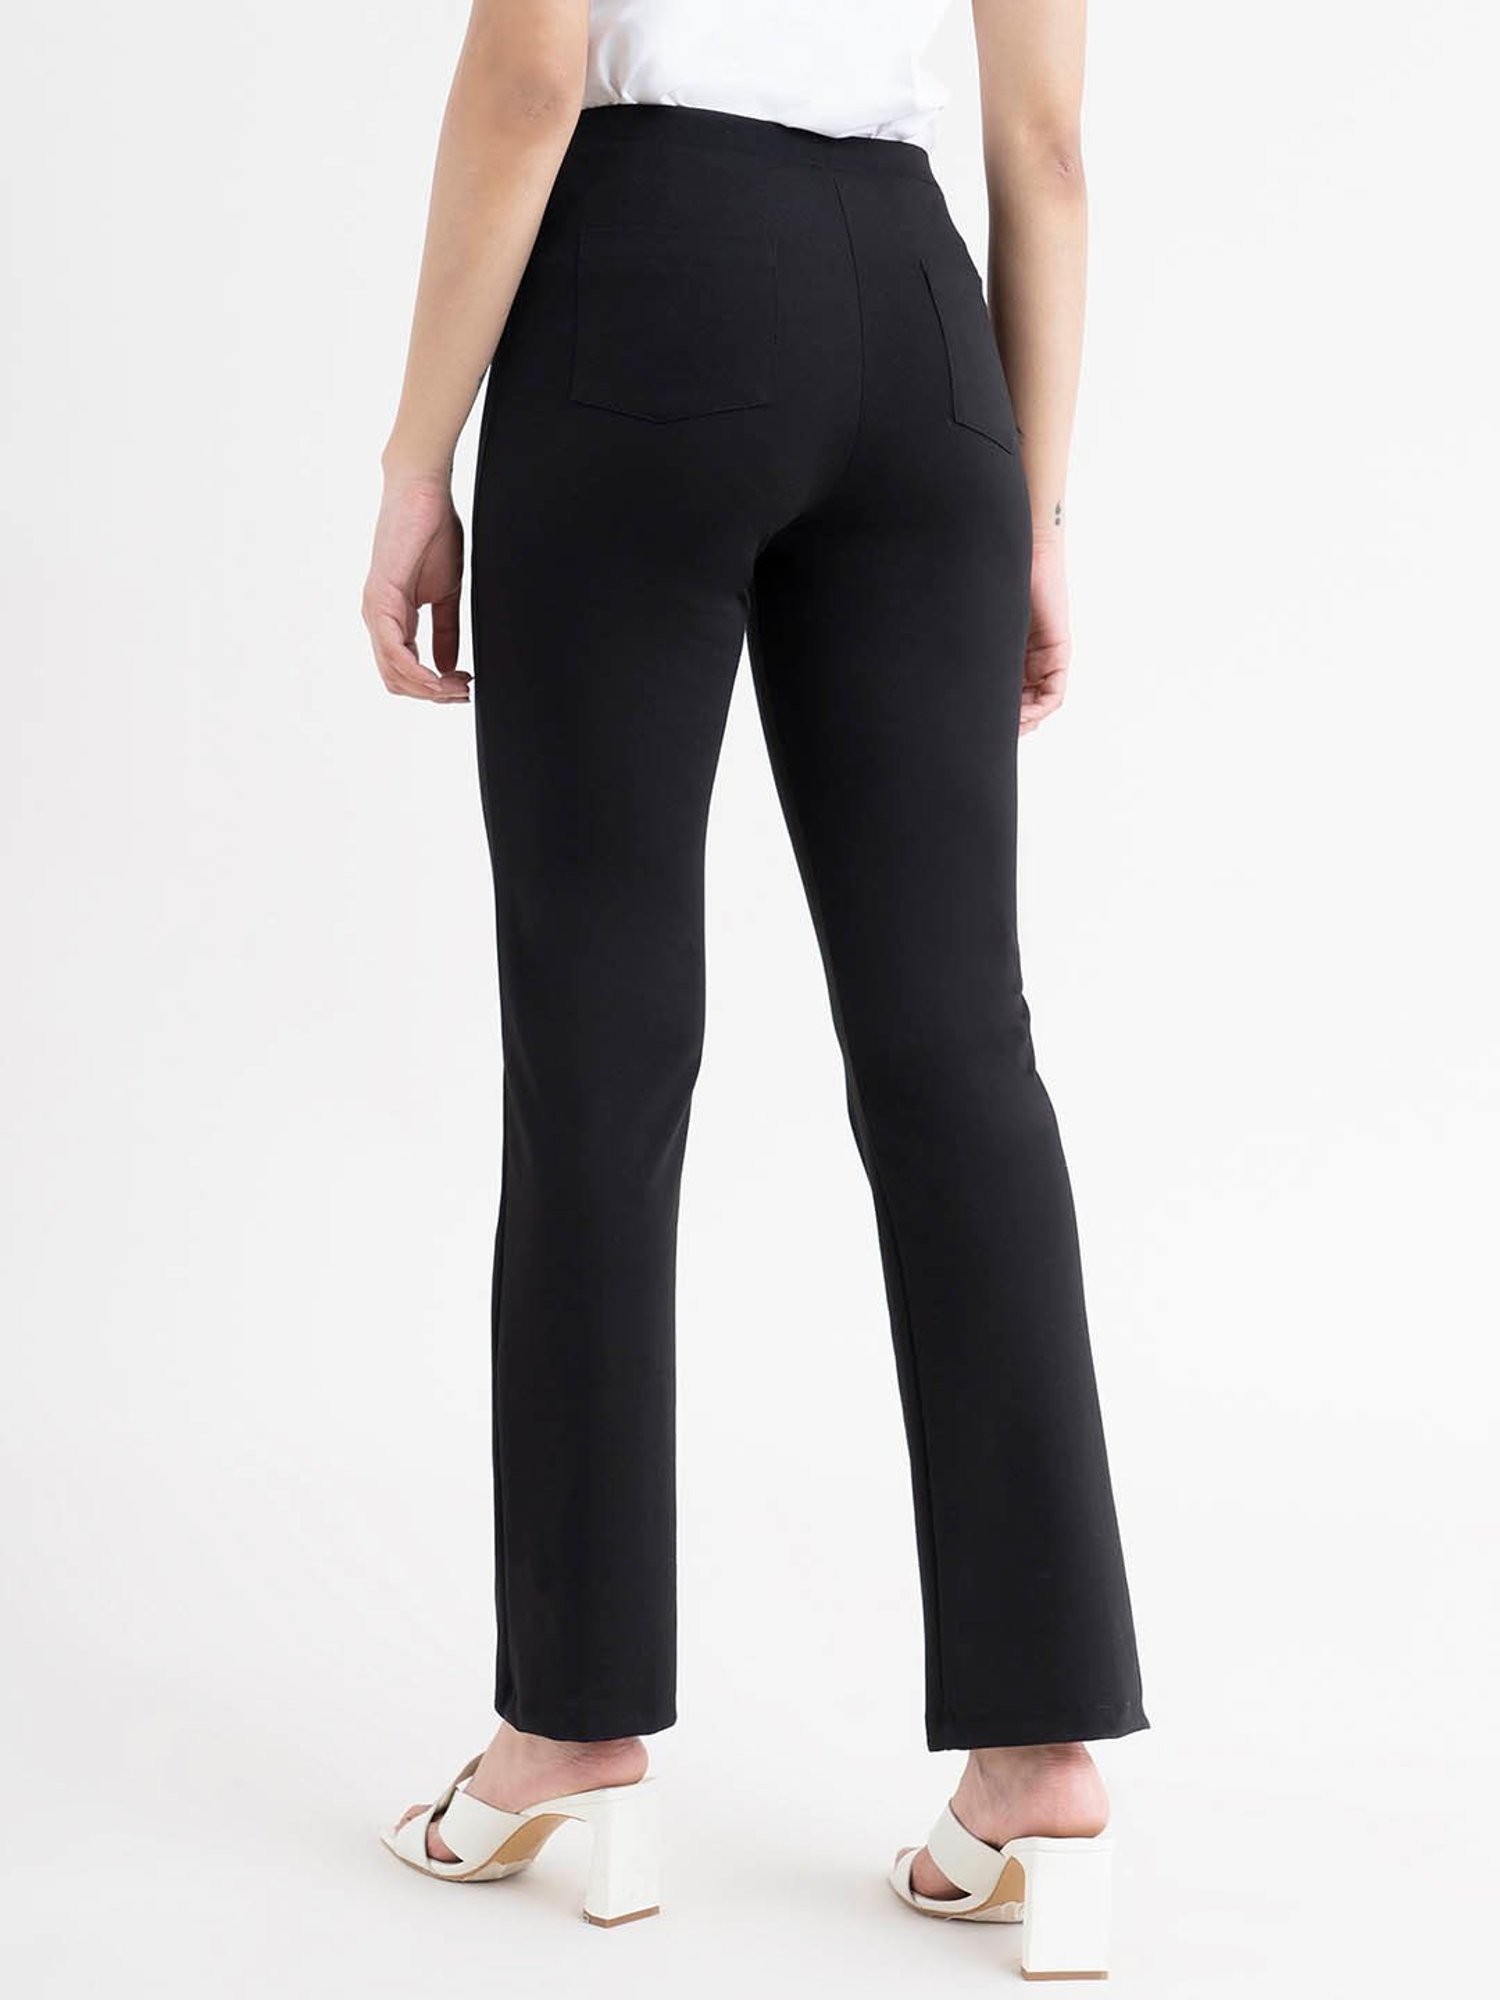 Tan/Beige Bootcut Women's Pants & Trousers - Macy's